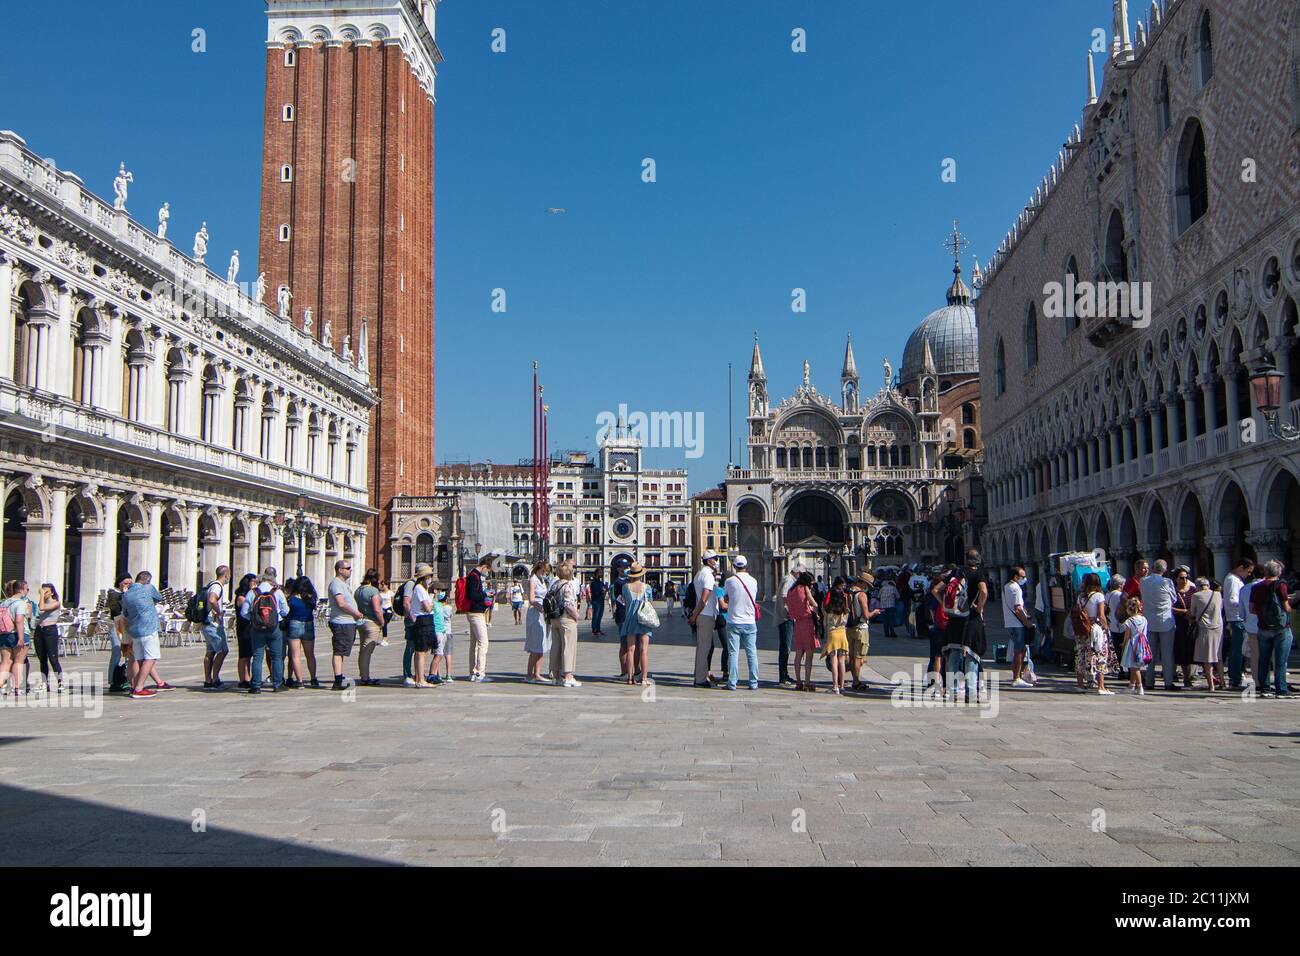 VENEZIA, ITALIA - 13 GIUGNO 2020: I turisti visitano il Museo del Palazzo Ducale il giorno della riapertura dopo più di 3 mesi di chiusura a causa della chiusura del Covid-19 il 13 giugno 2020 a Venezia. Foto Stock